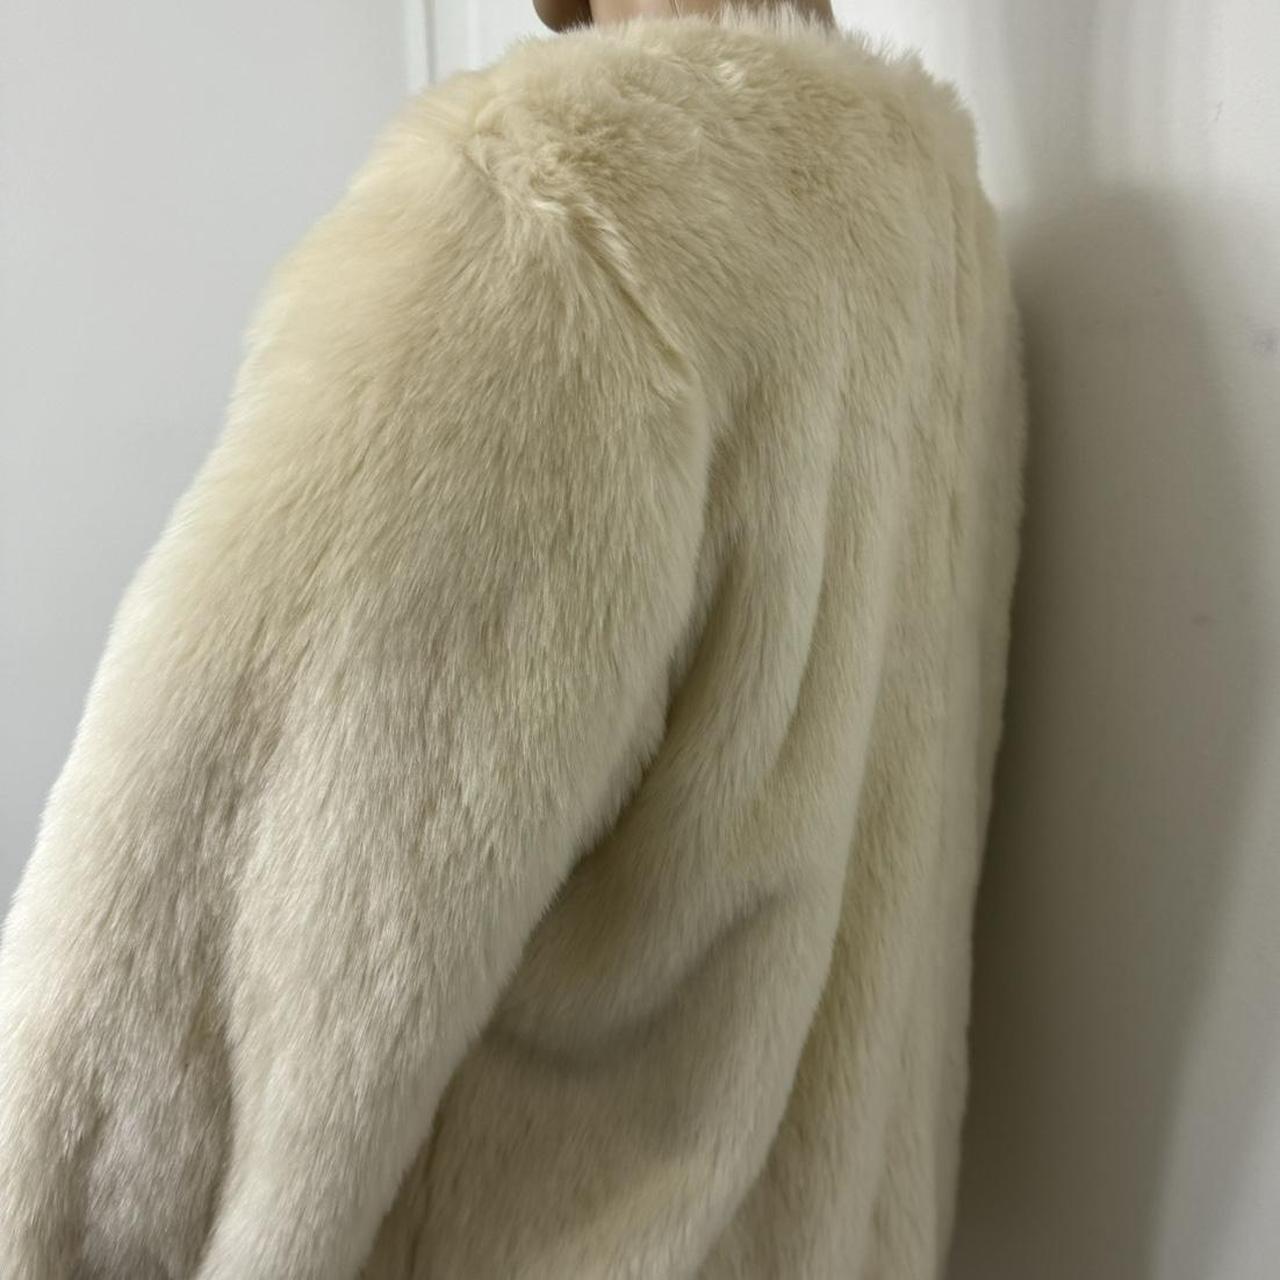 faux fur coat Size: large runs smaller ... - Depop